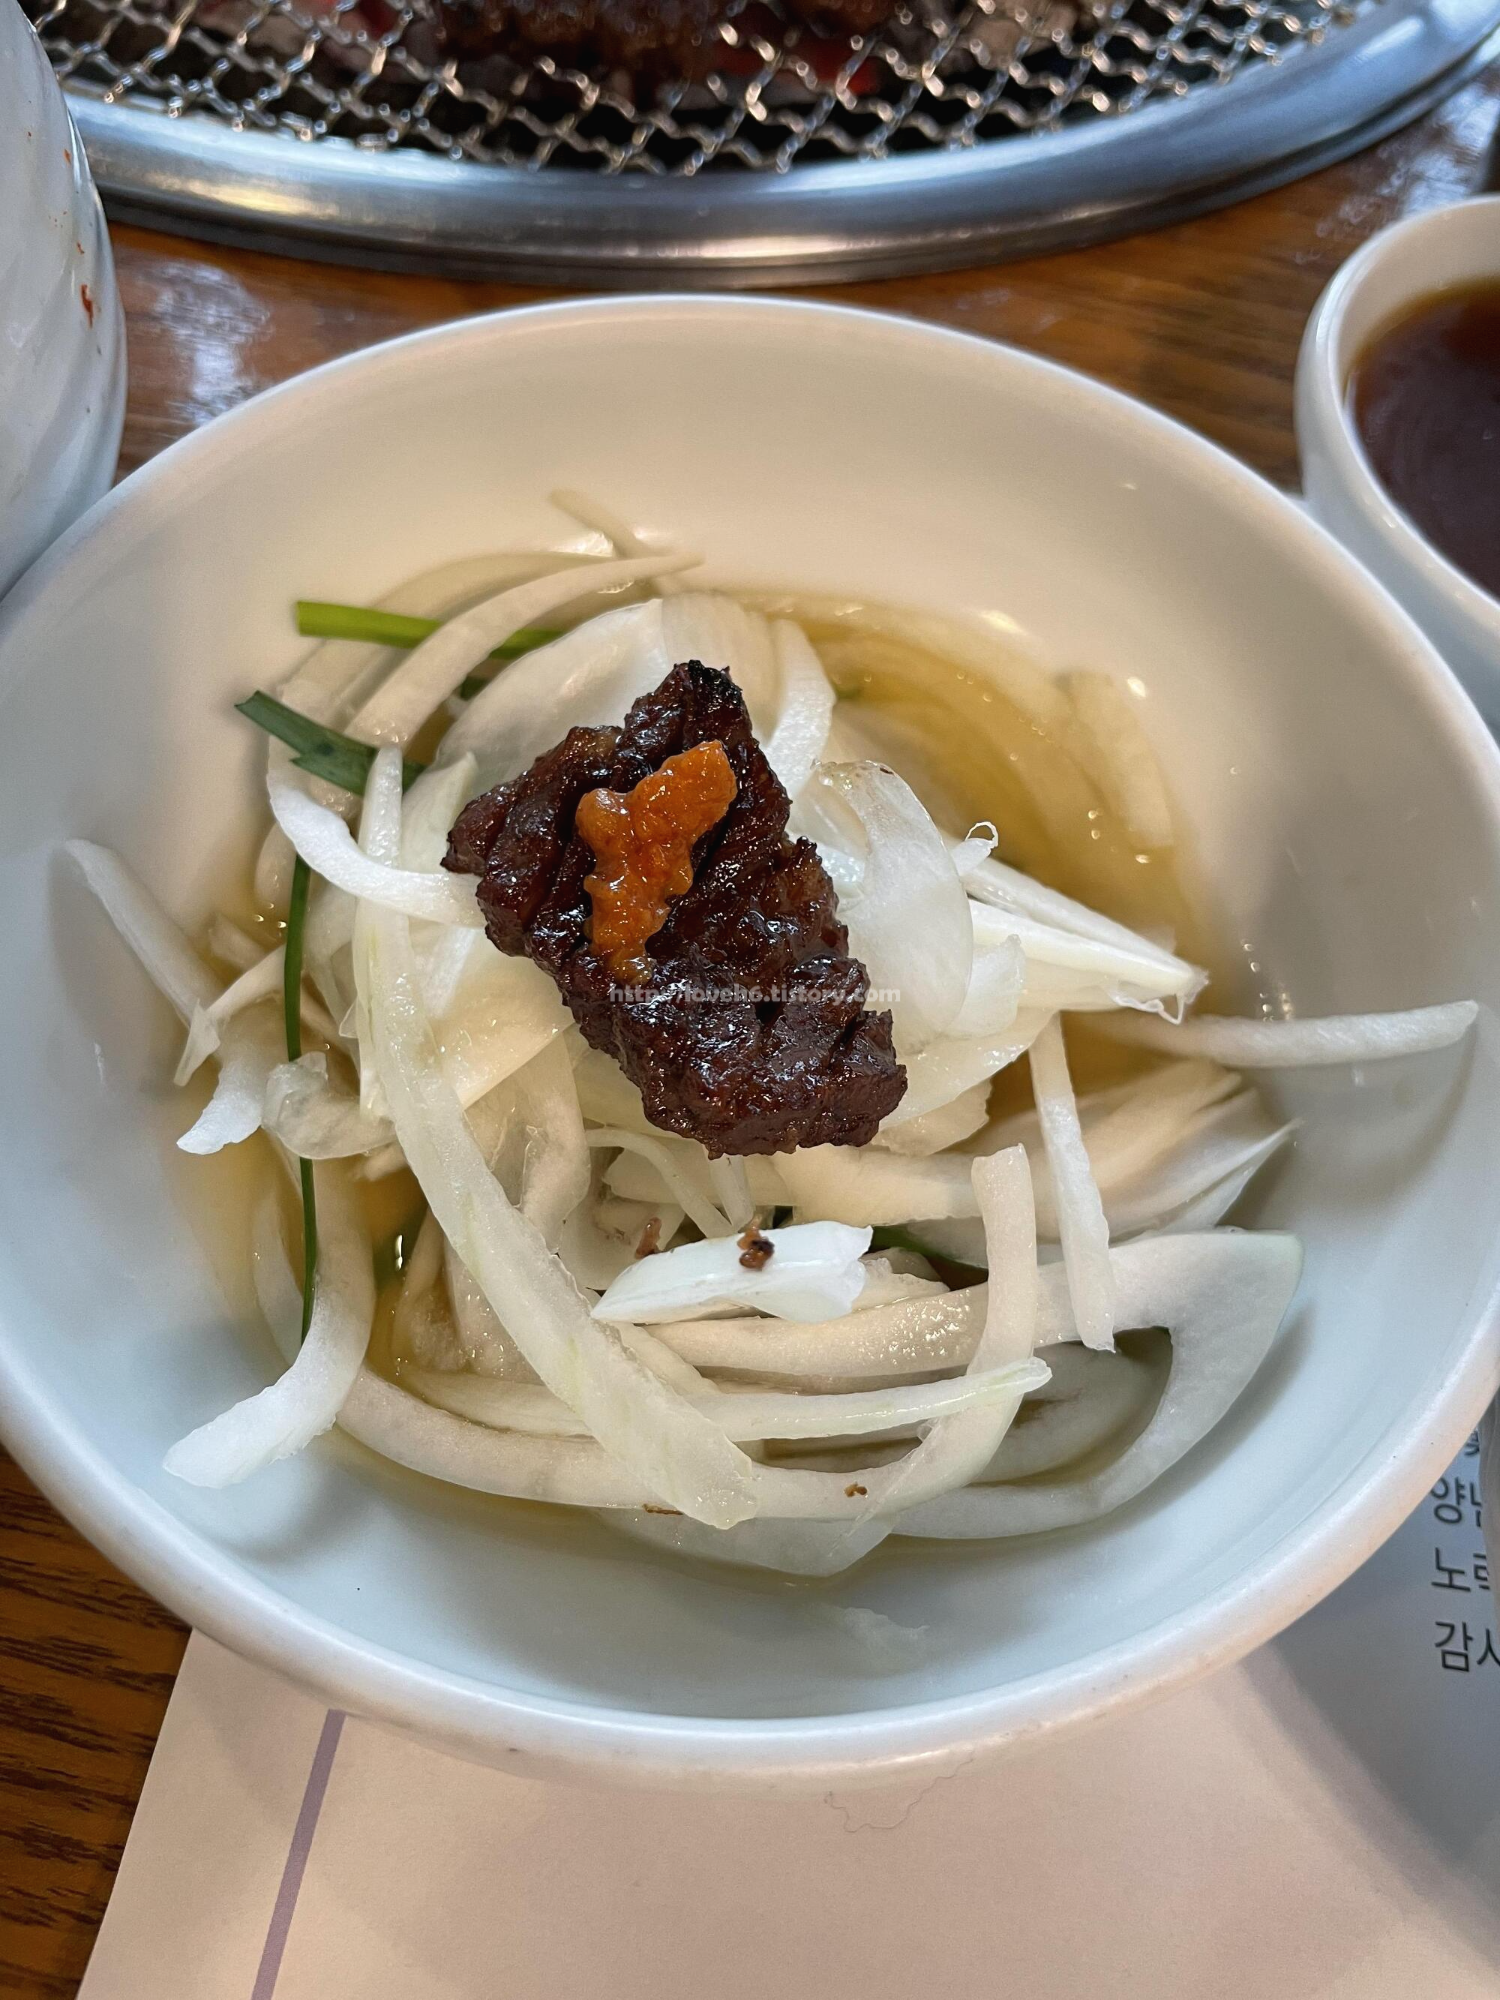 광양숯불구이 상무본점/Gwangyang Charcoal Grilled Sangmu Main Branch/오늘도 여러 가지 다양한

방법으로 고기를 즐겼습니다

고기만 먹기도 하고

쌈장만 찍어서 먹기도 하고